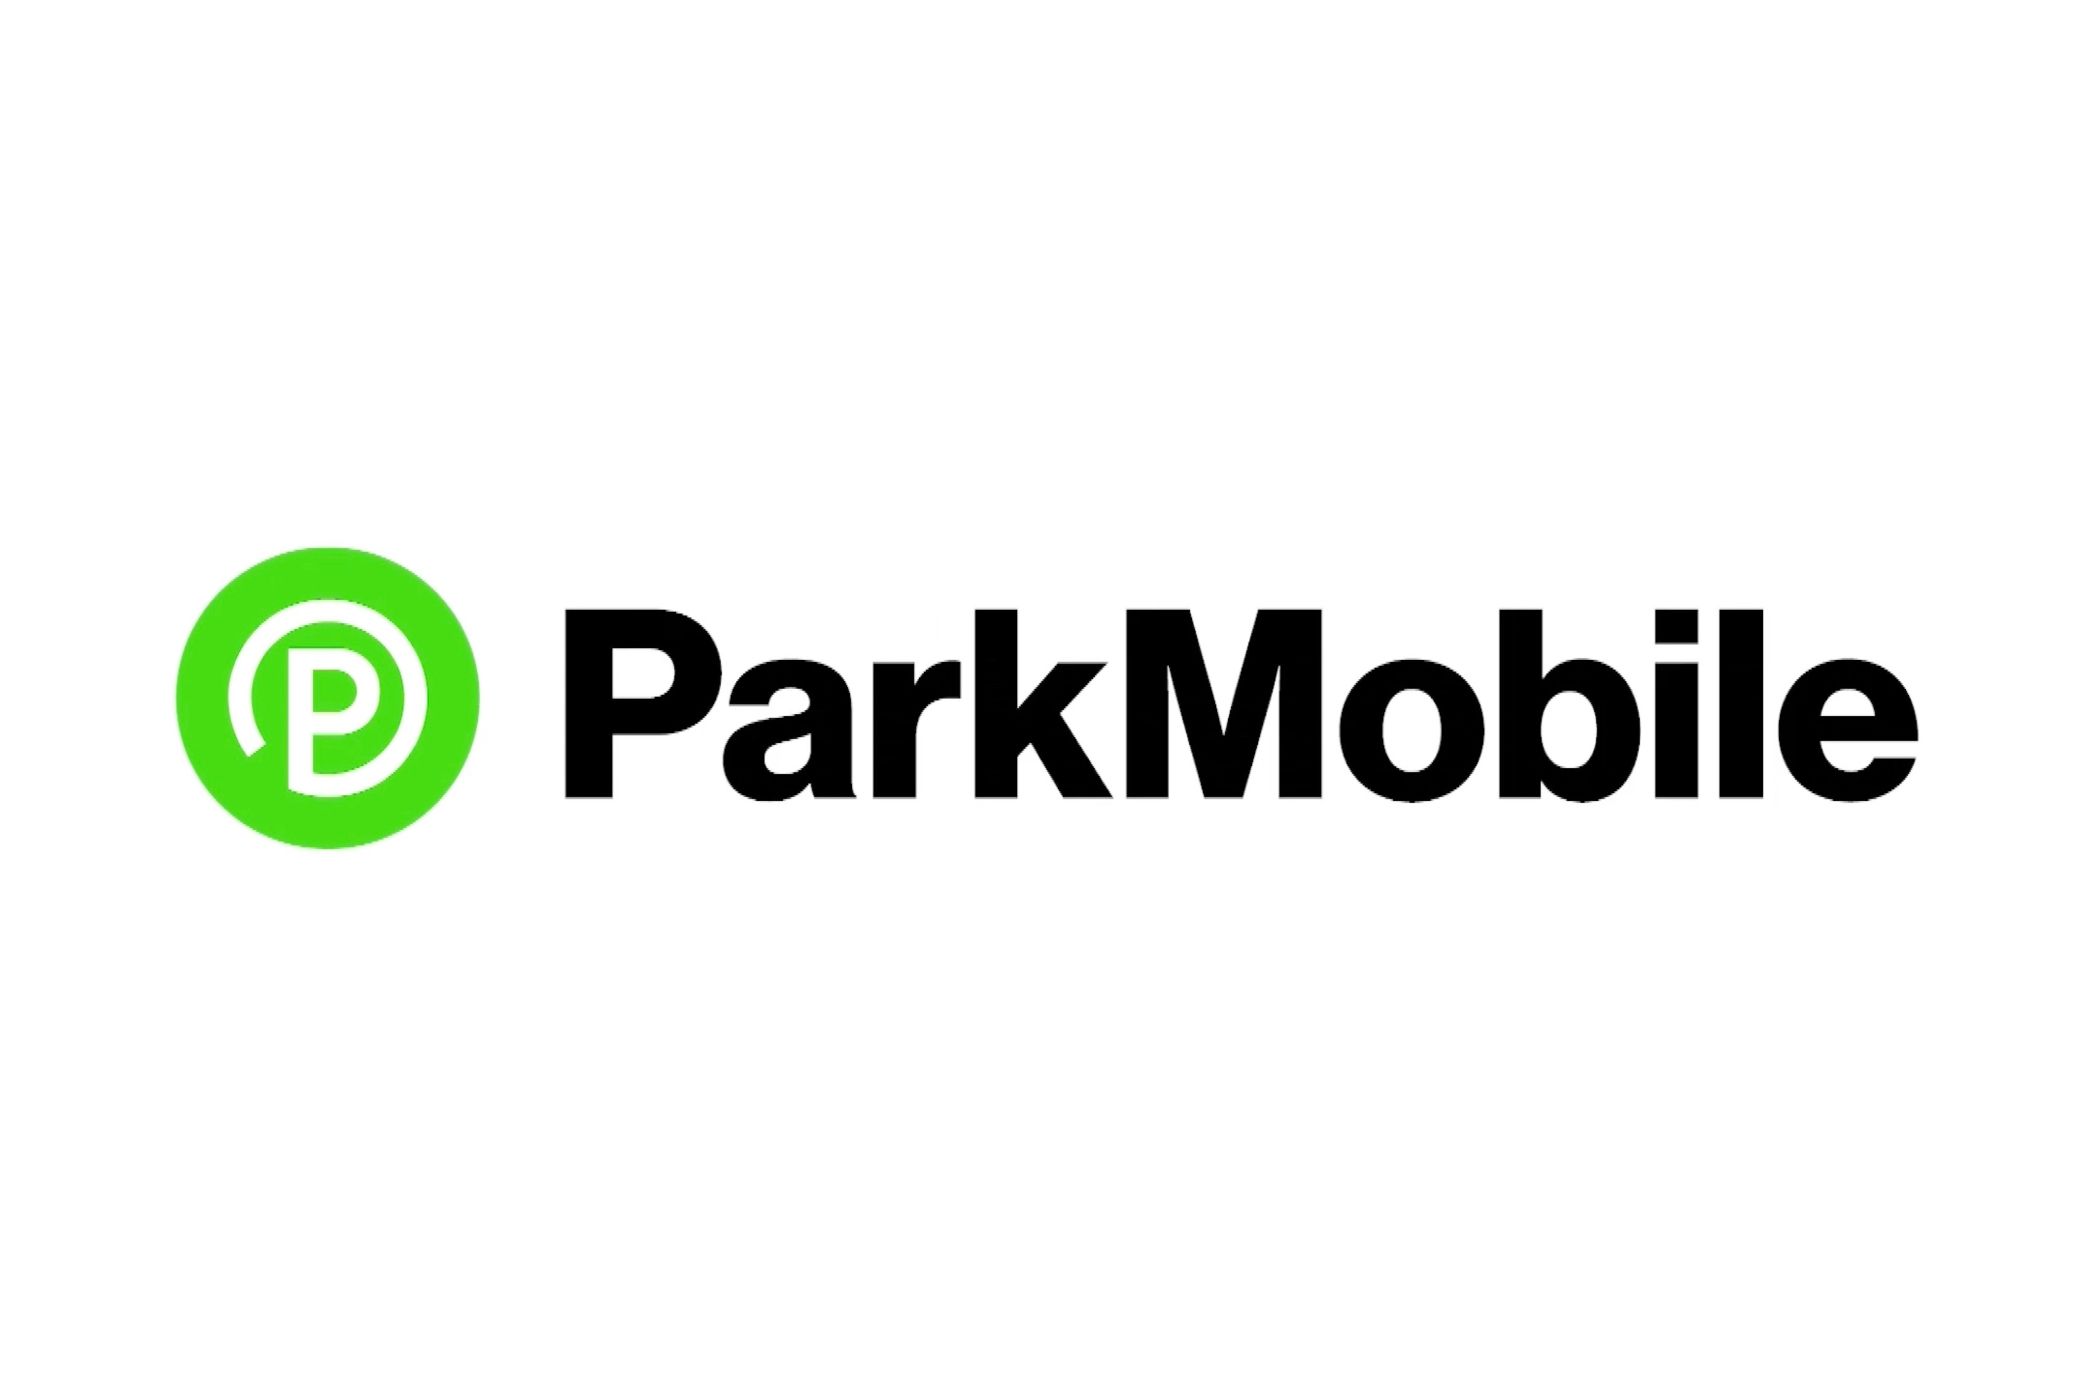 ParkMobile app and logo. 